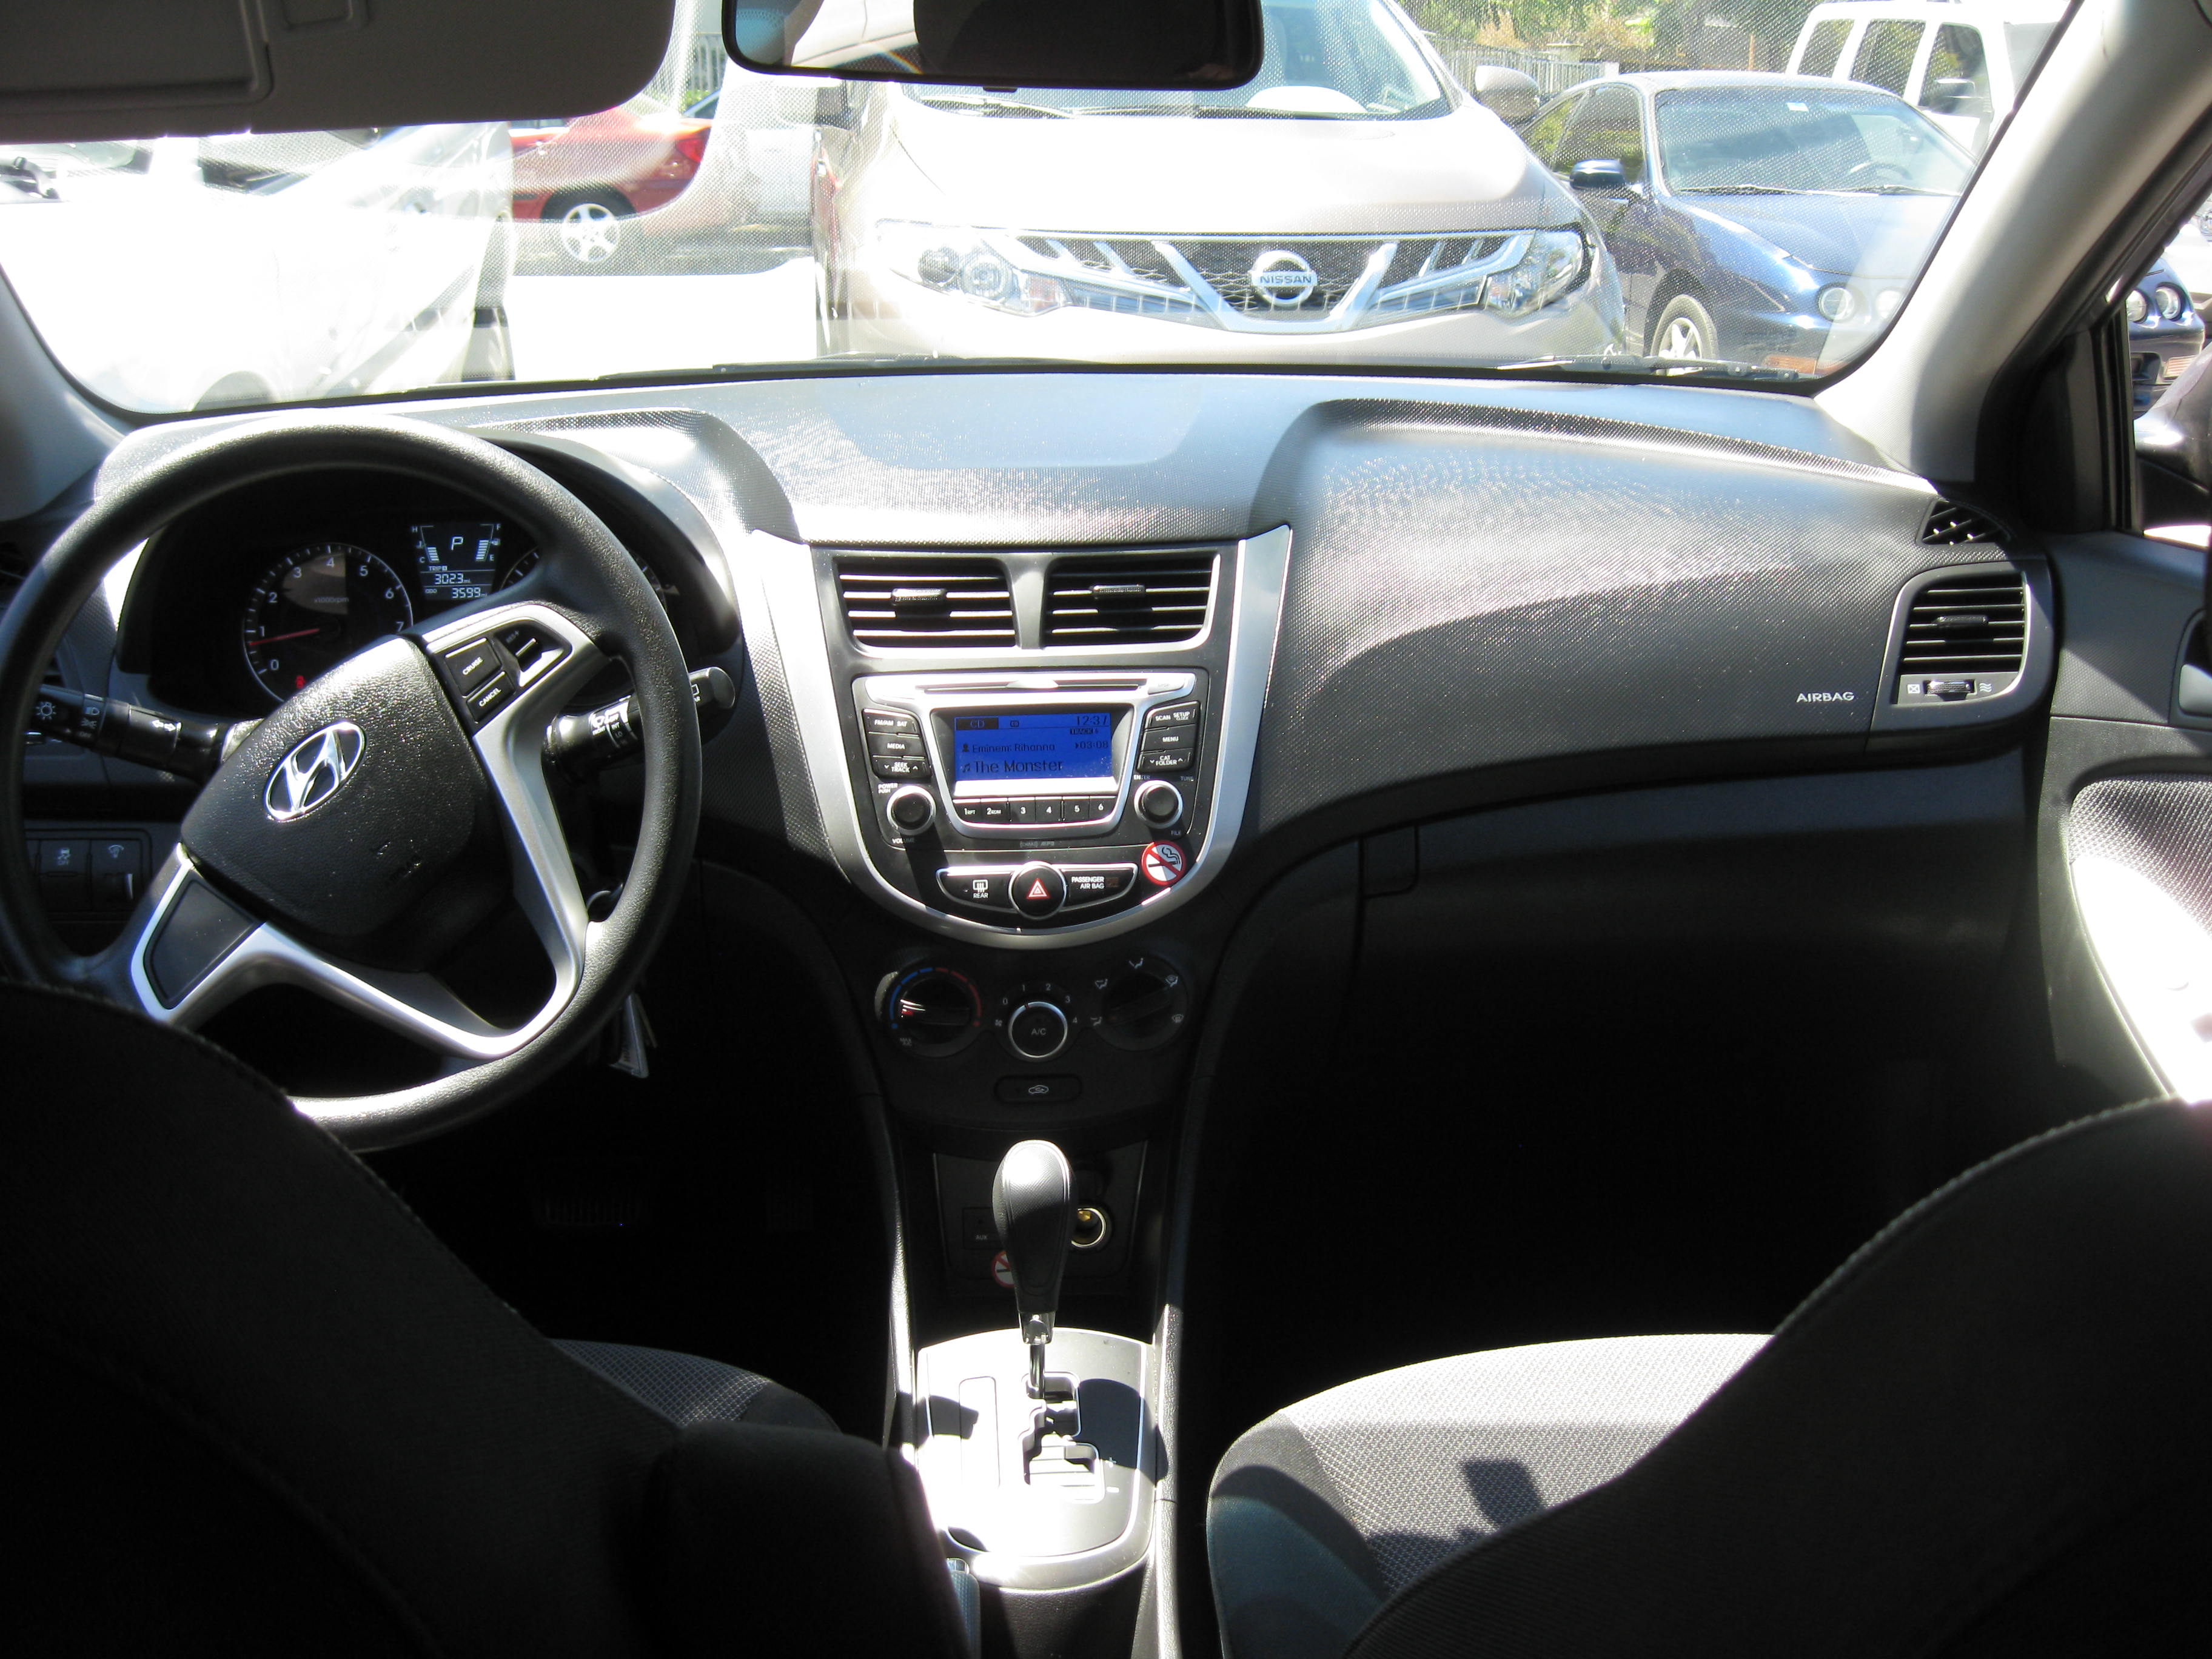 Hyundai Accent exterior photo